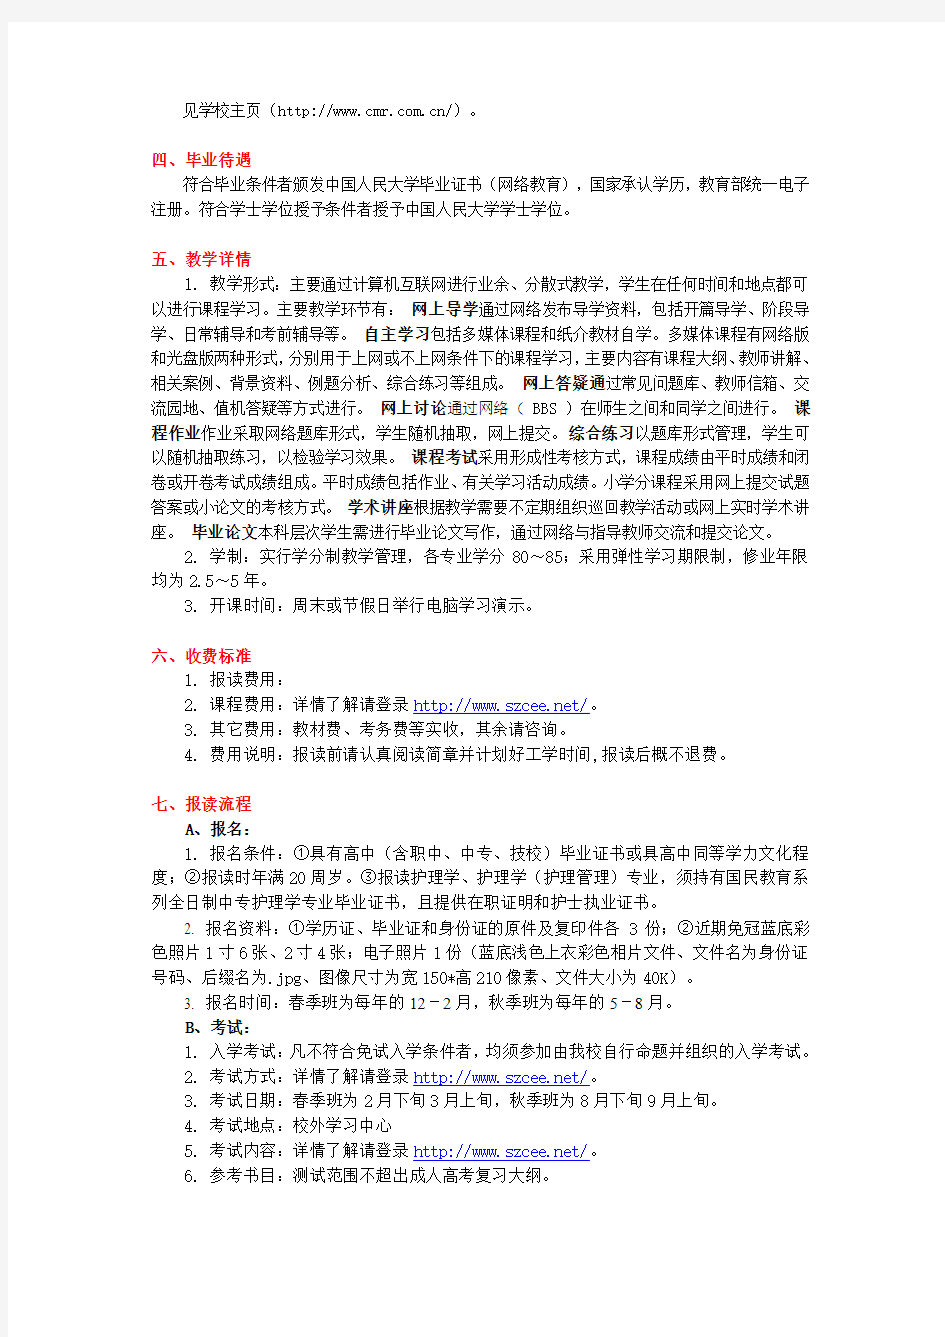 关于中国人民大学网络教育的流程